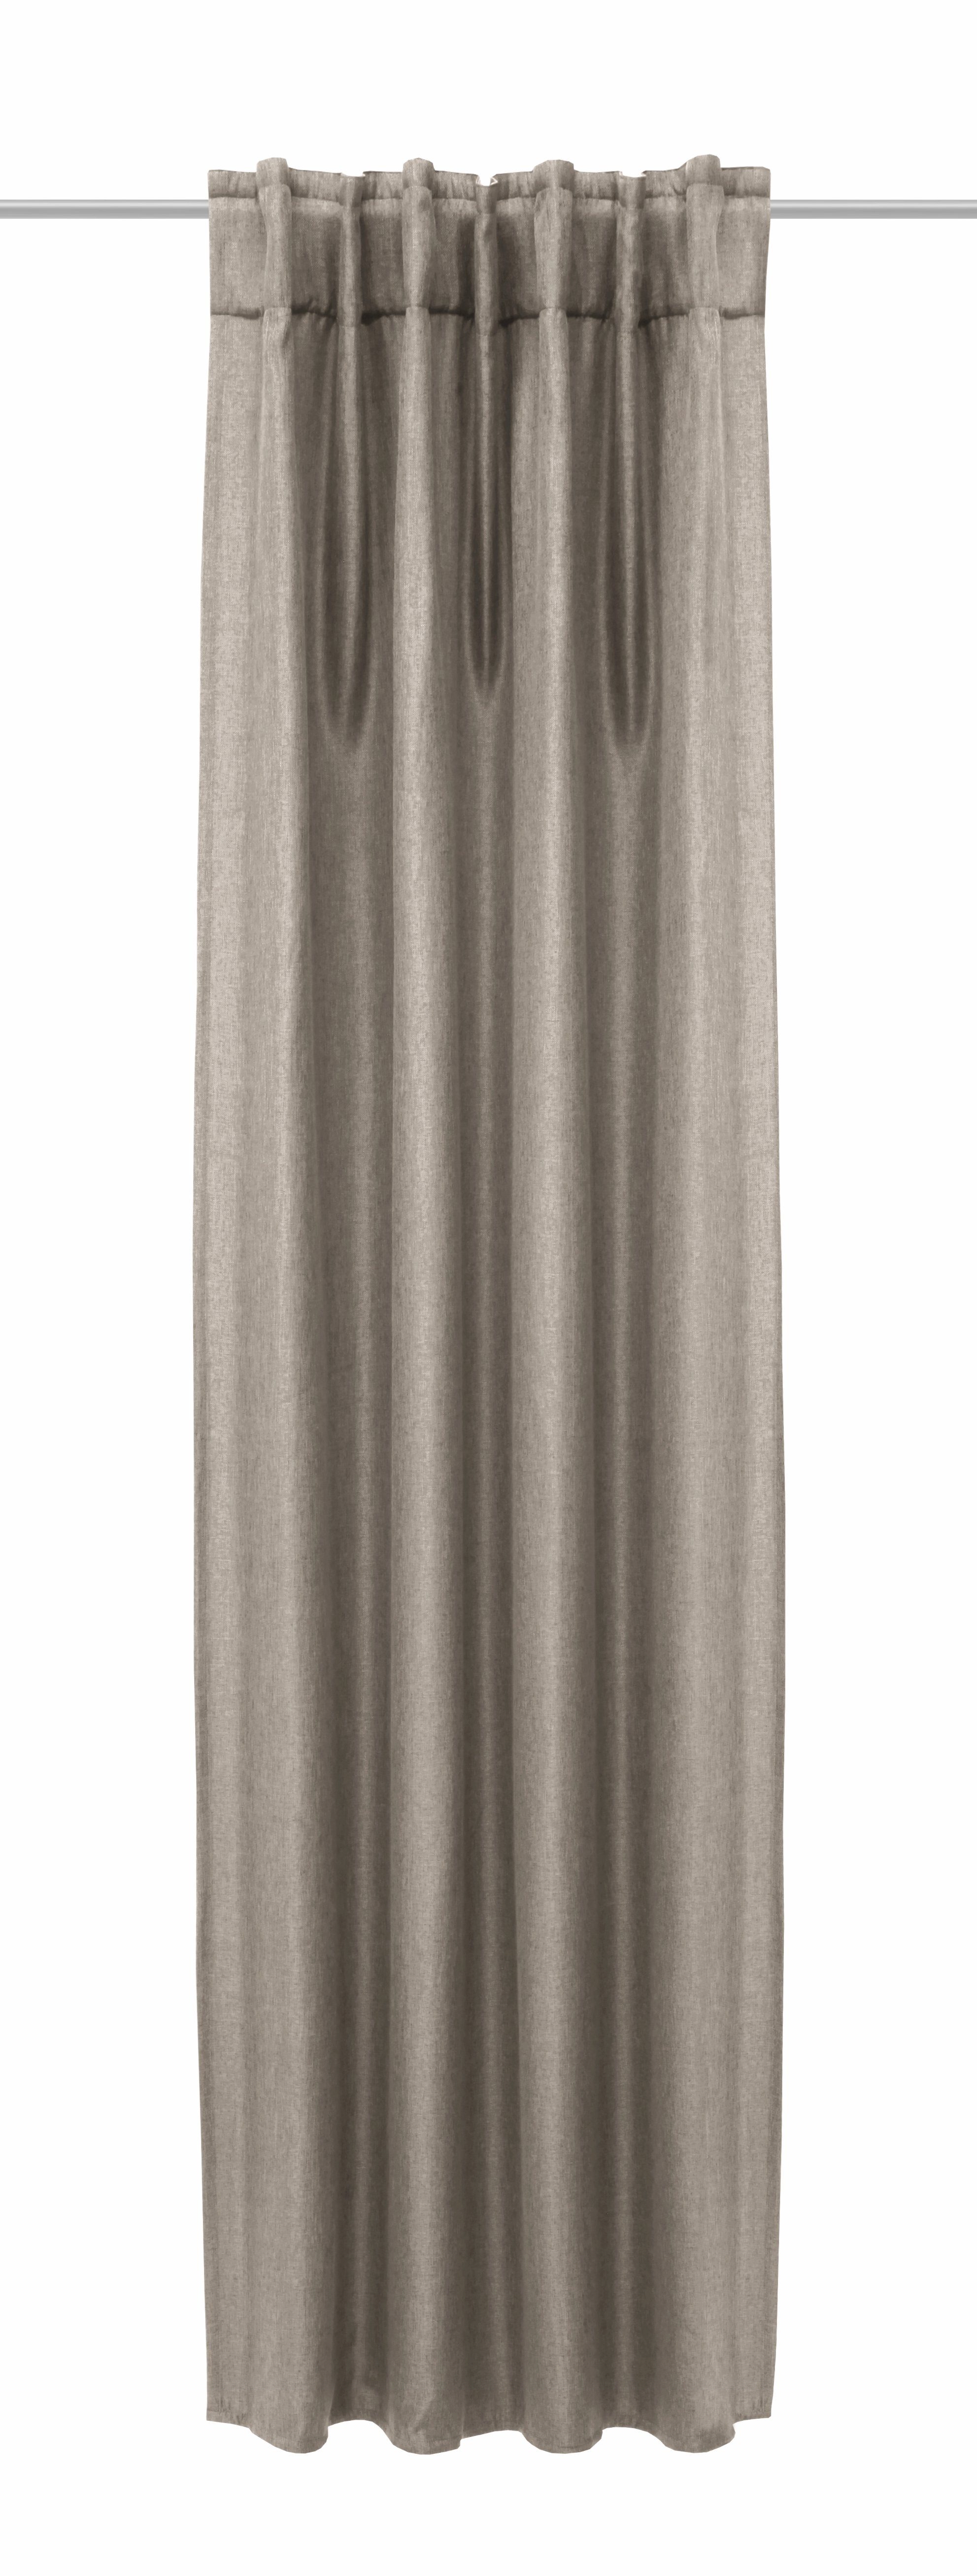 Verdunkelungsvorhang Verdunkelungsvorhang Vorhang verdunkelnder Clever-Kauf-24, Jolie Leinenoptik